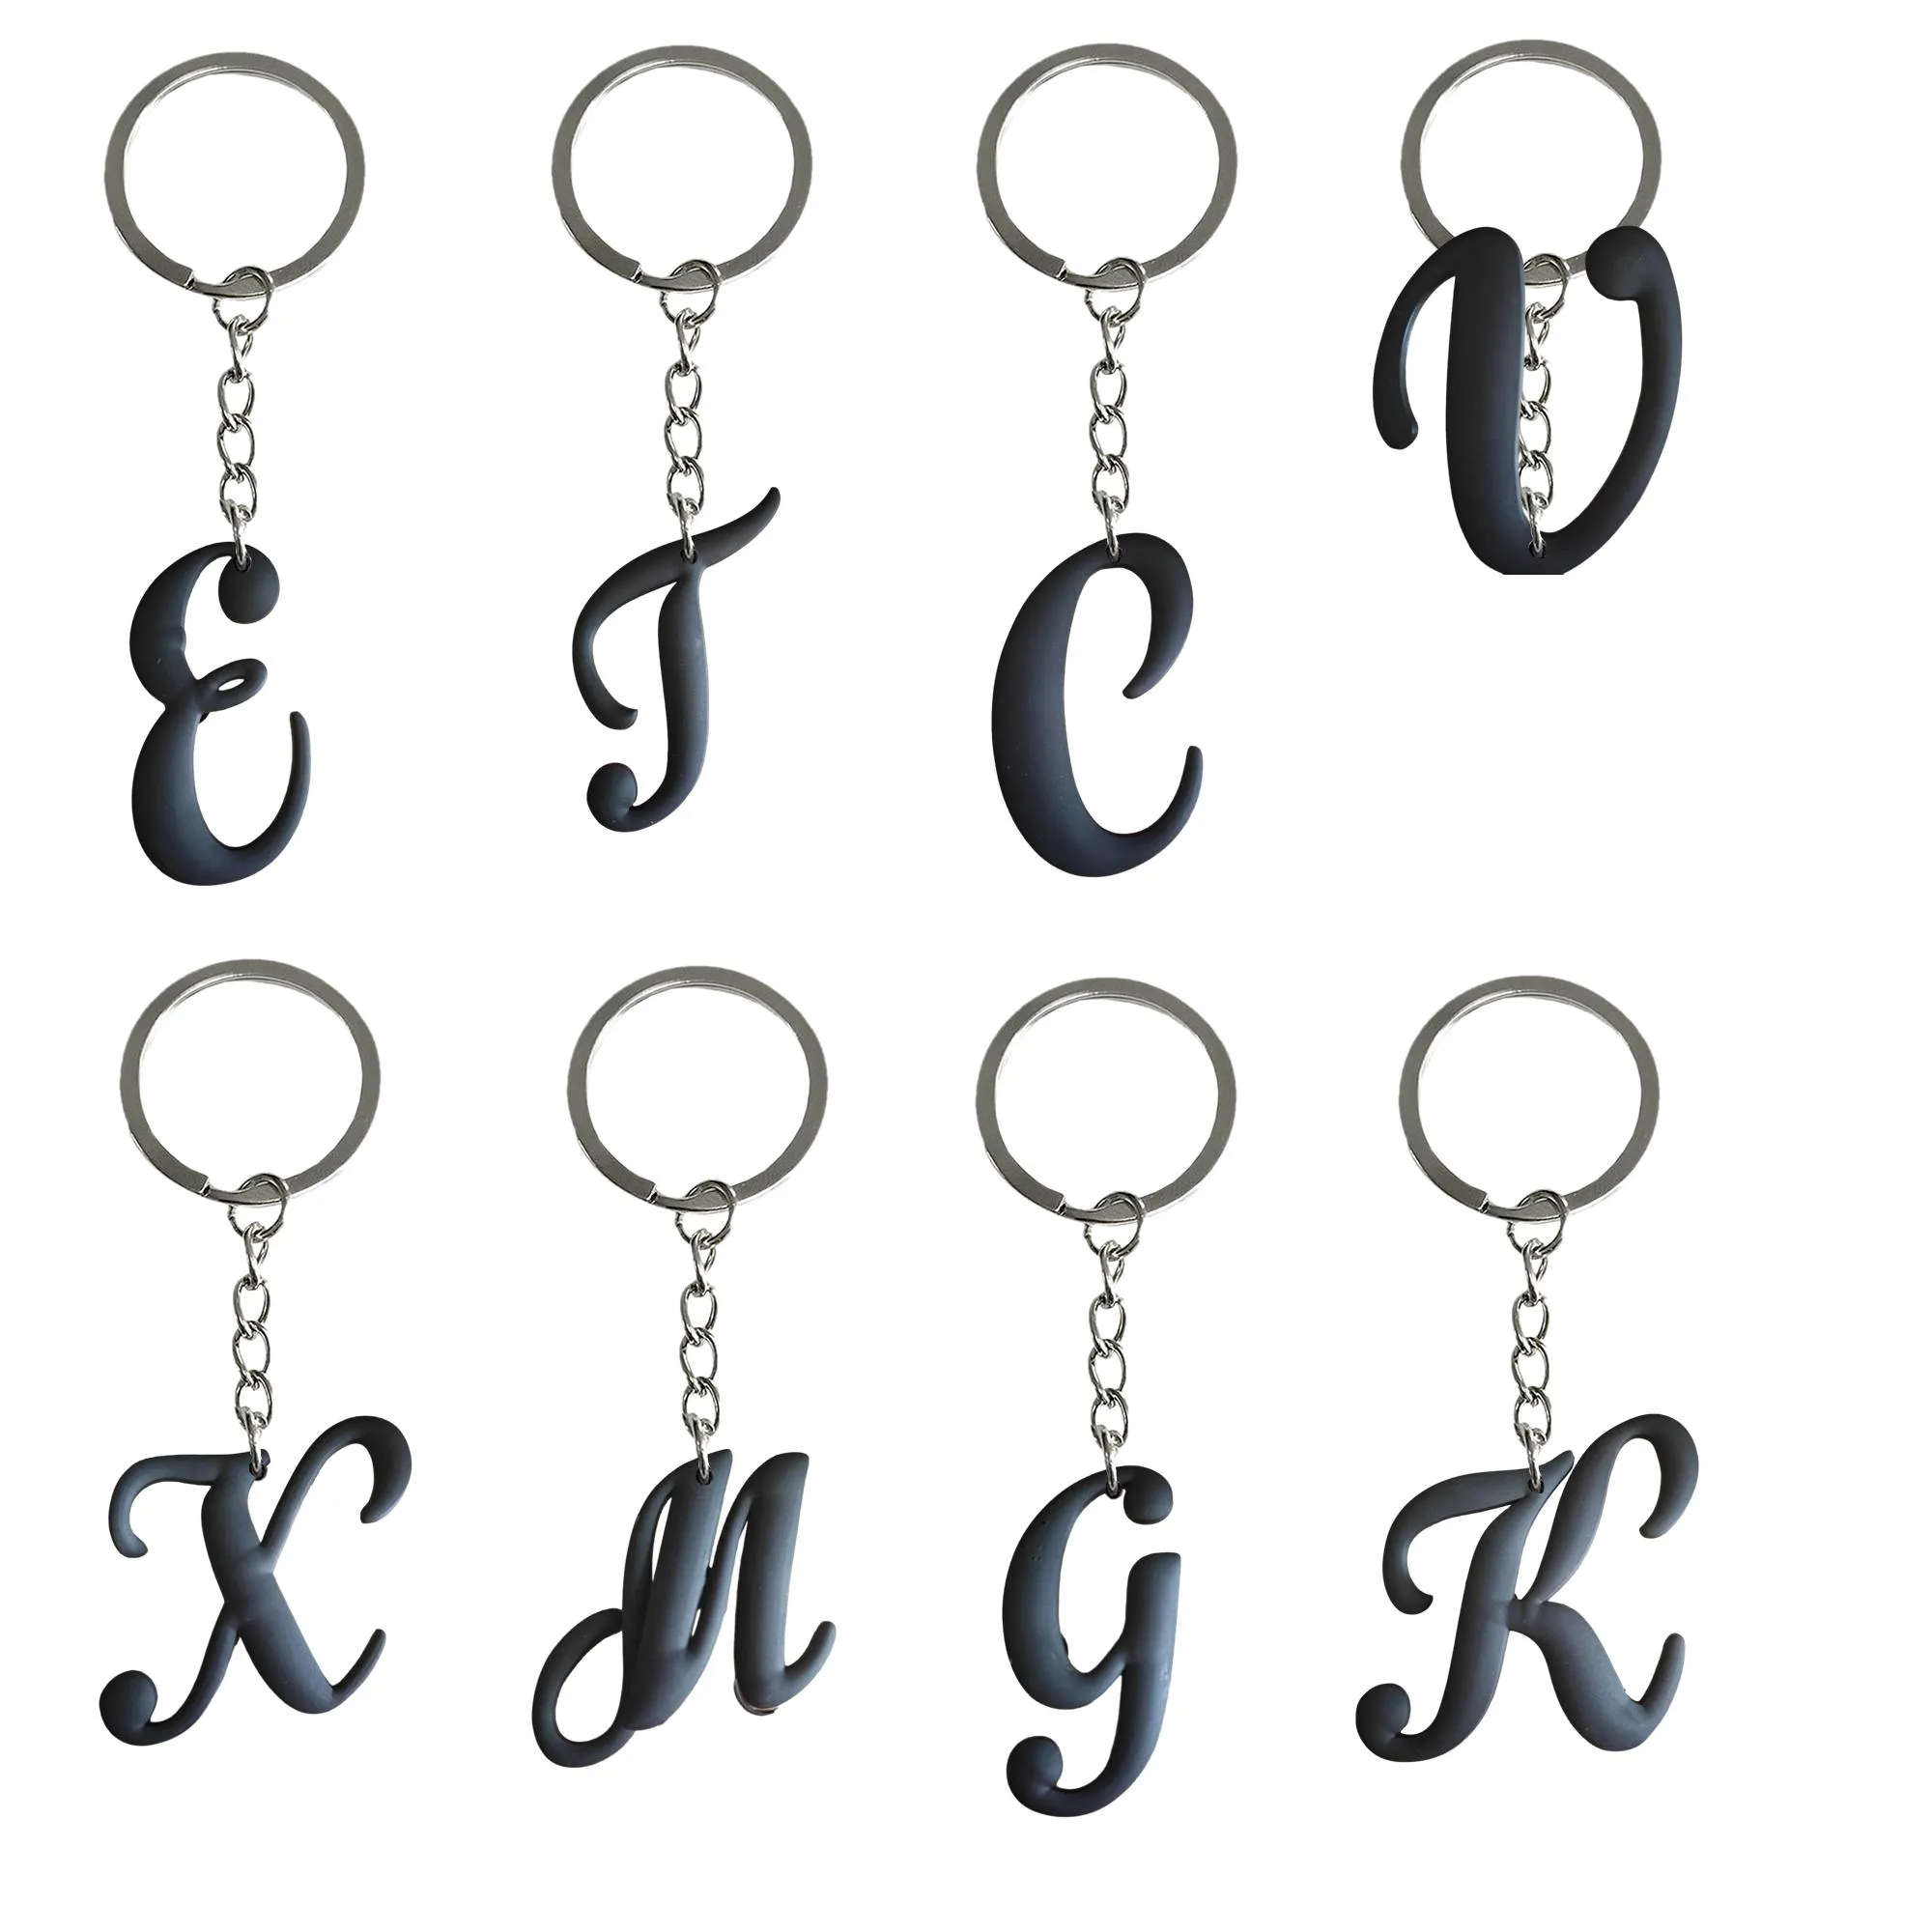 Schlüsselringe Schwarze große Buchstaben Schlüsselbund Schlüsselring für Schultaschen Rucksack Ring Boys Schlüsselanhänger Tags Goodie Bag Stuff Weihnachtsgeschenke An OTDBV